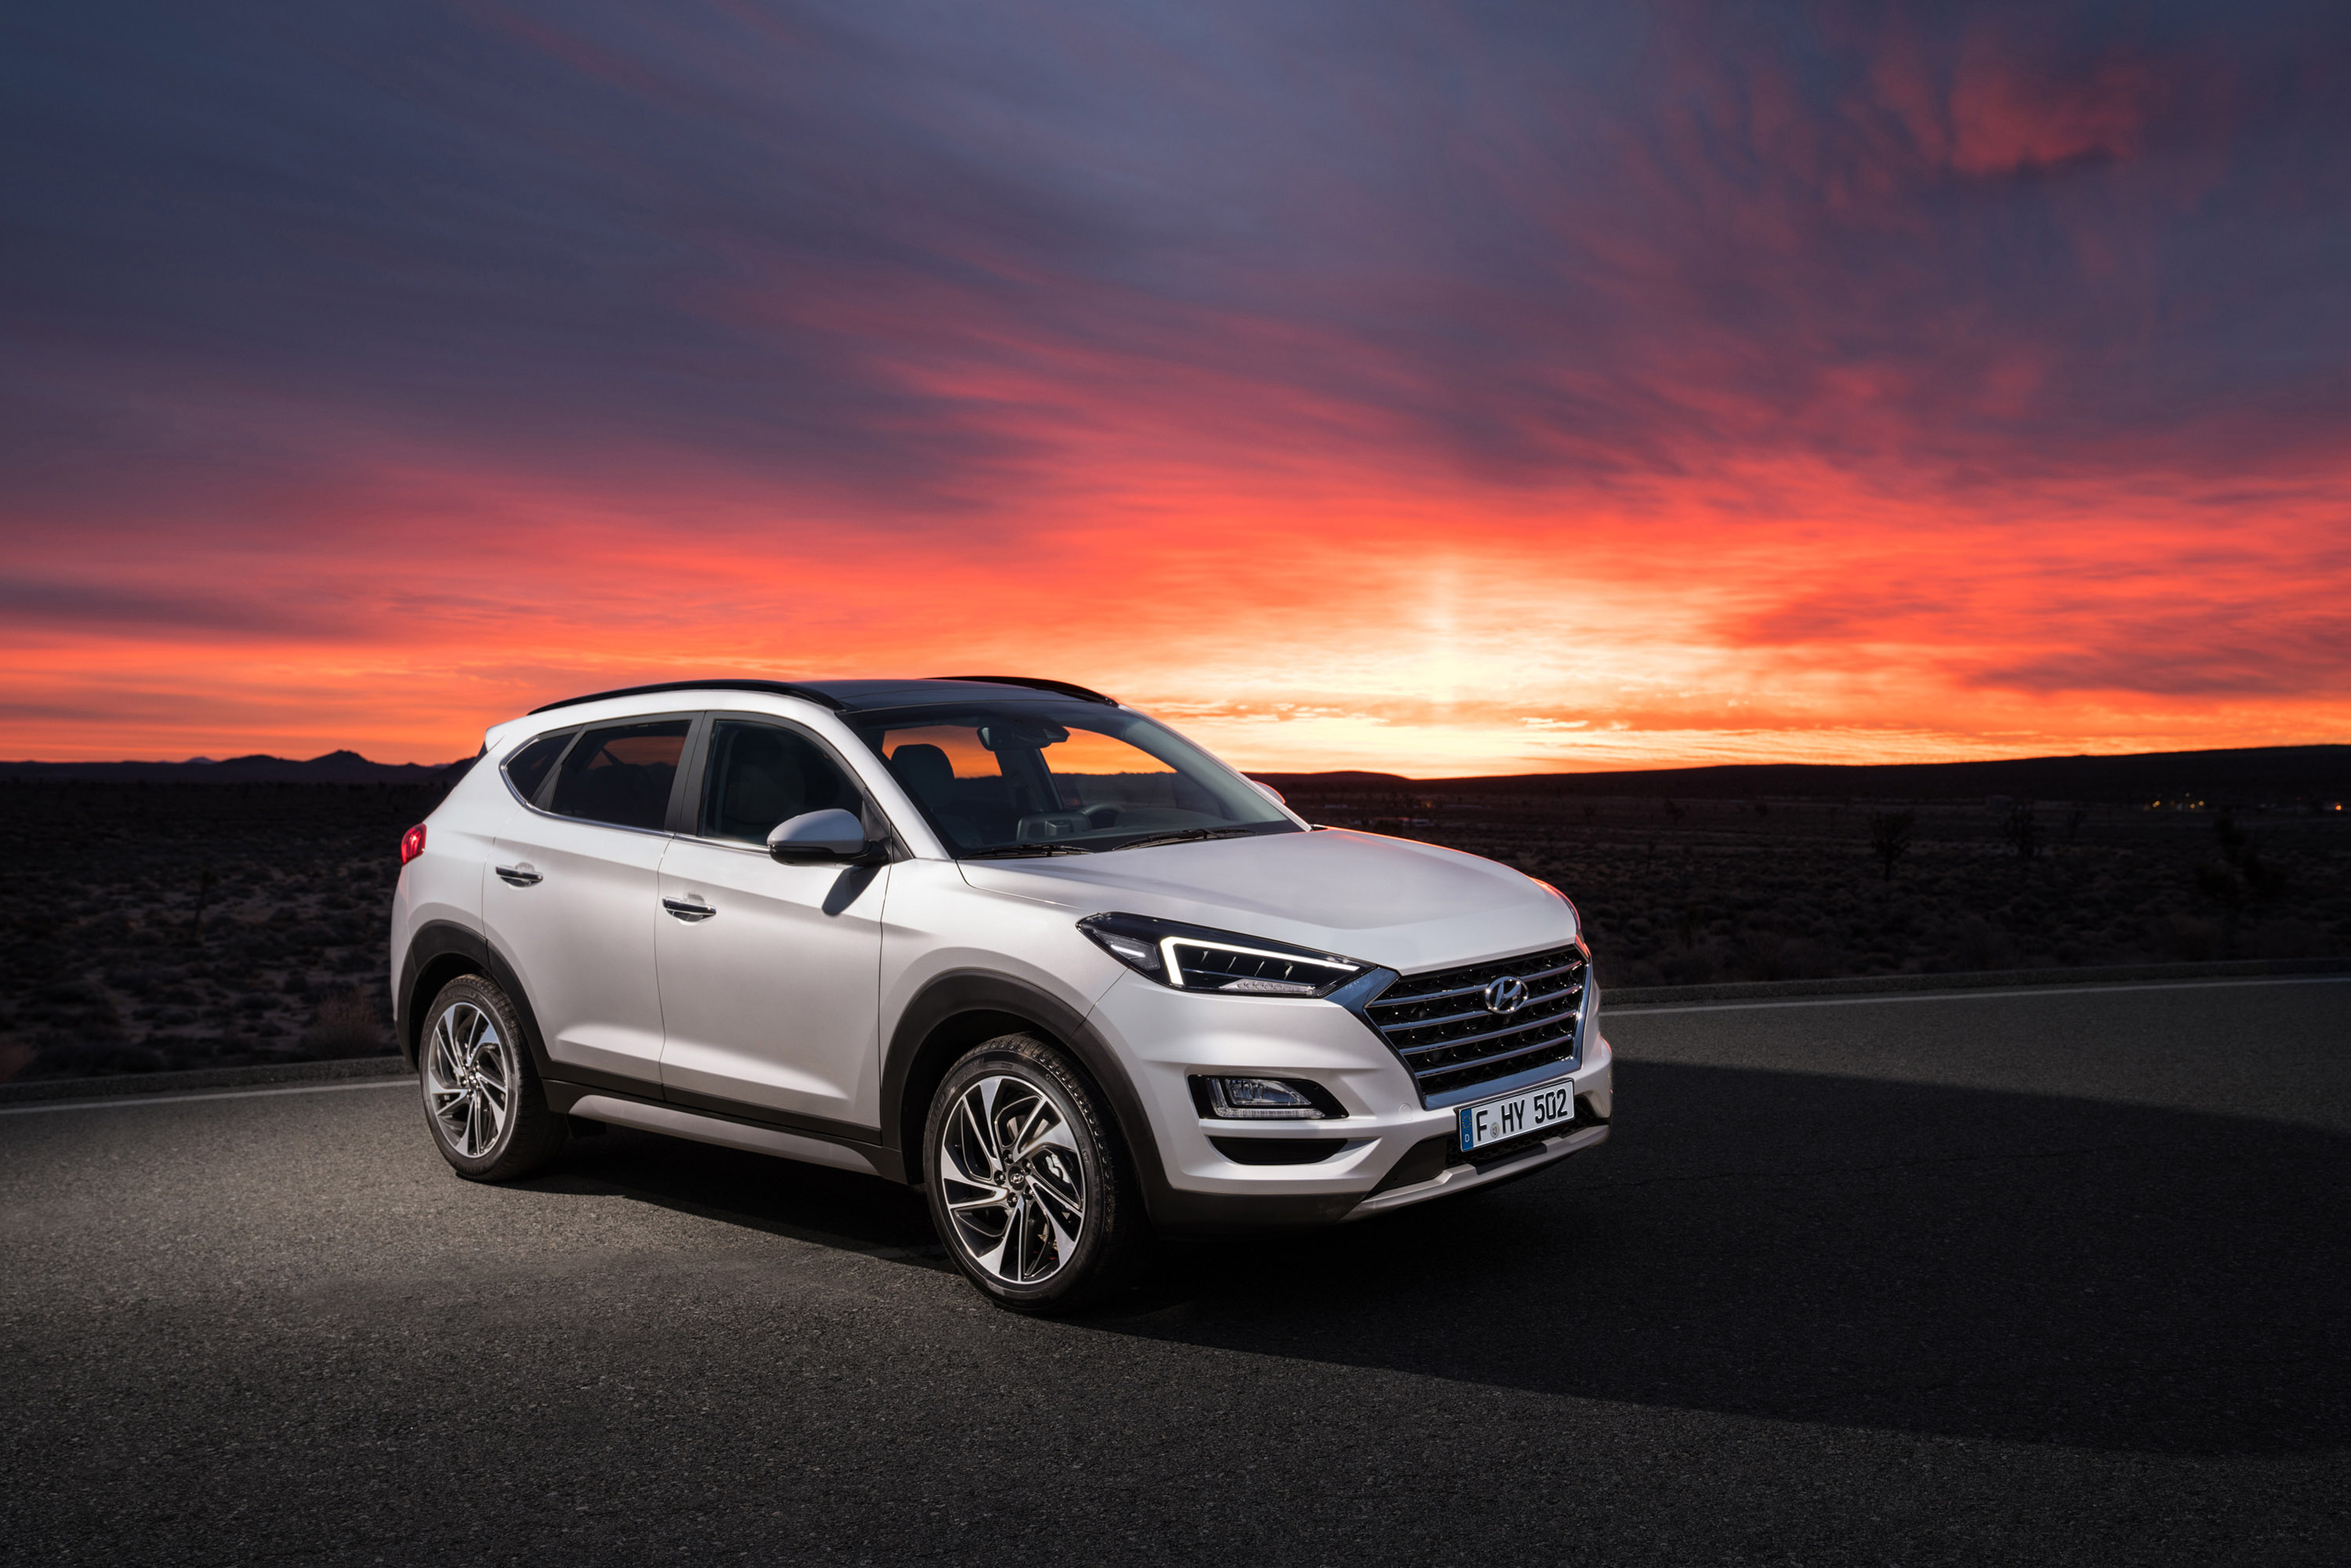 Фактически, с этой стартовой кампанией Hyundai также покажет новые автомобили и модели для европейского рынок. Новый Tucson, как ожидается, появится в автосалонах уже летом.